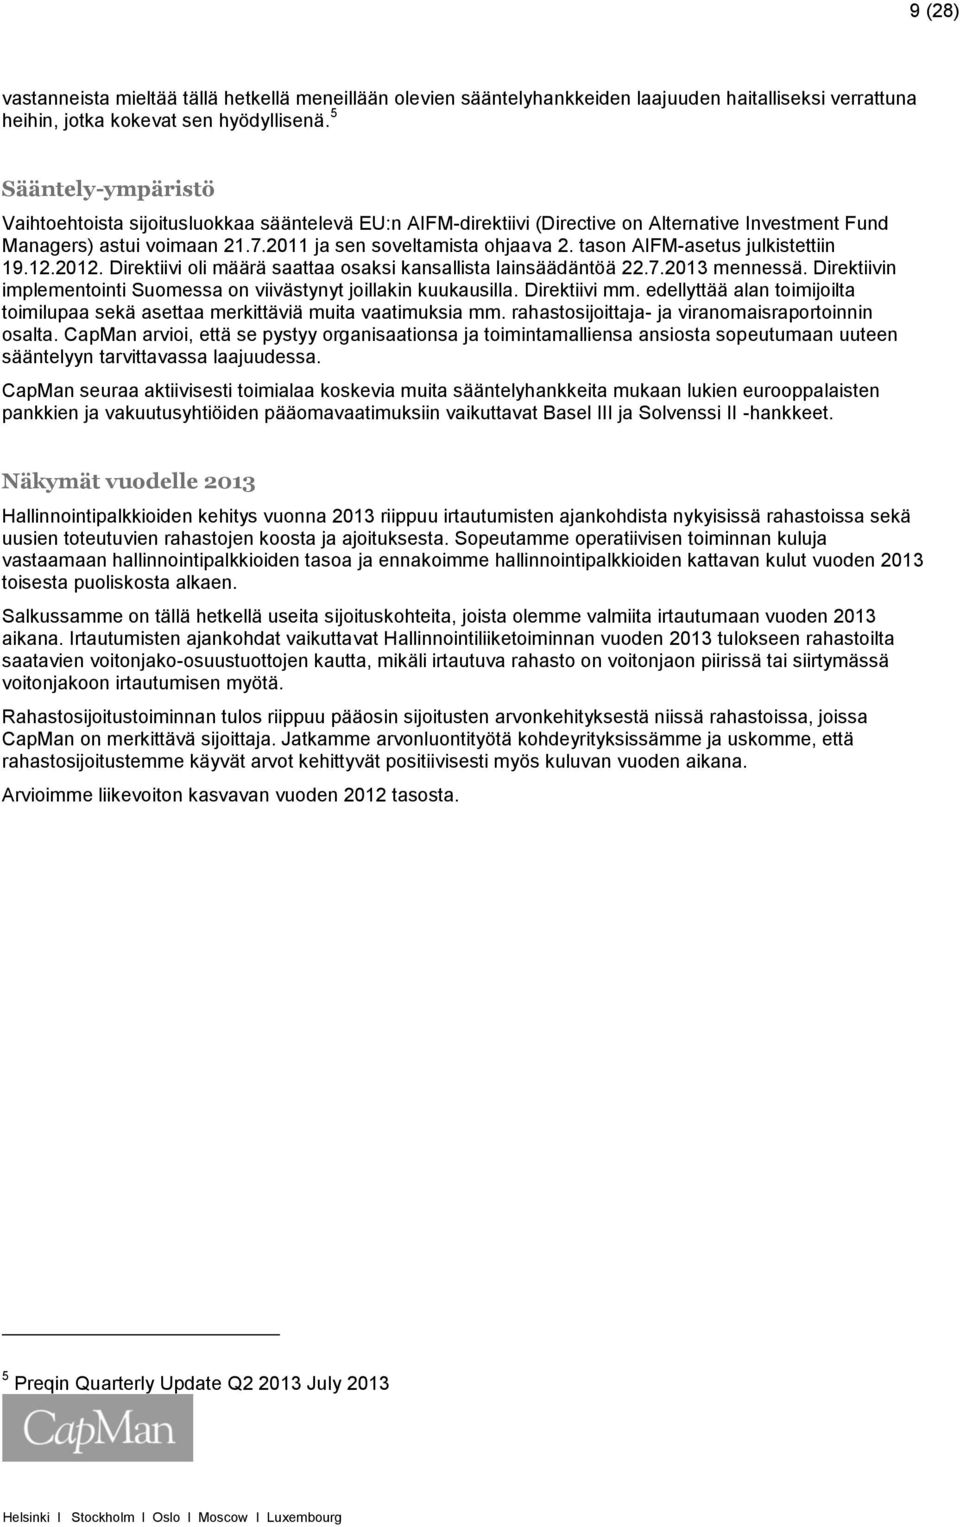 tason AIFM-asetus julkistettiin 19.12.2012. Direktiivi oli määrä saattaa osaksi kansallista lainsäädäntöä 22.7.2013 mennessä. Direktiivin implementointi Suomessa on viivästynyt joillakin kuukausilla.